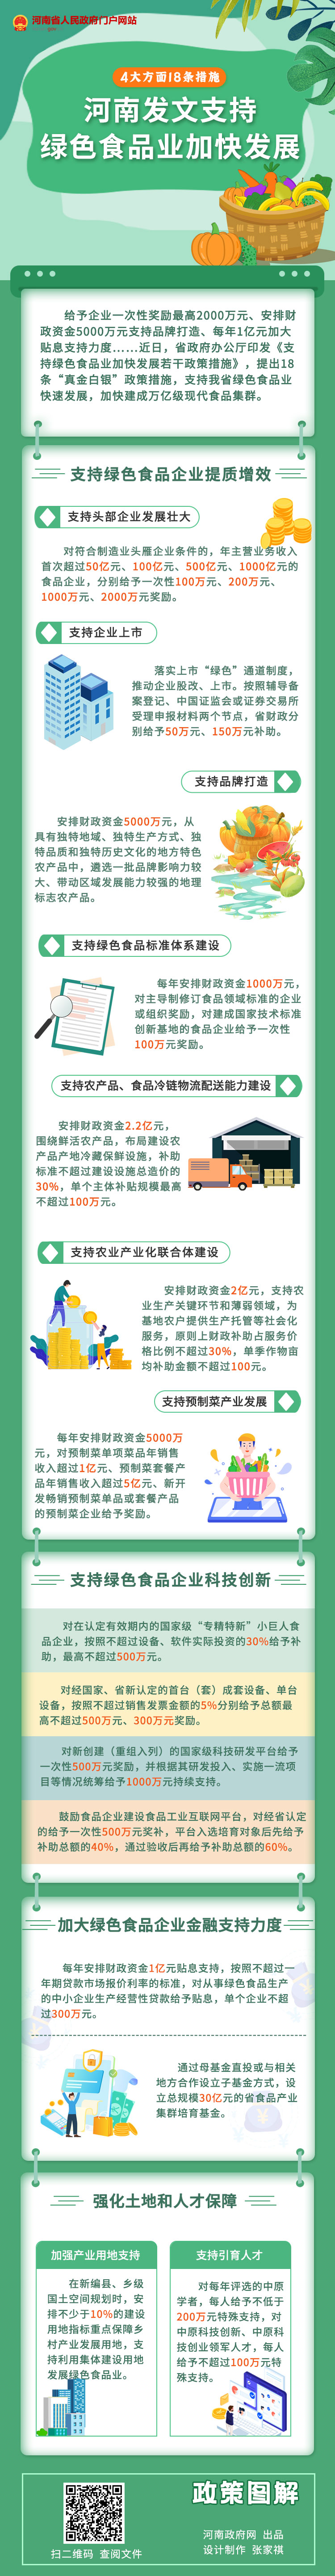 河南设立30亿元食品产业集群培育基金